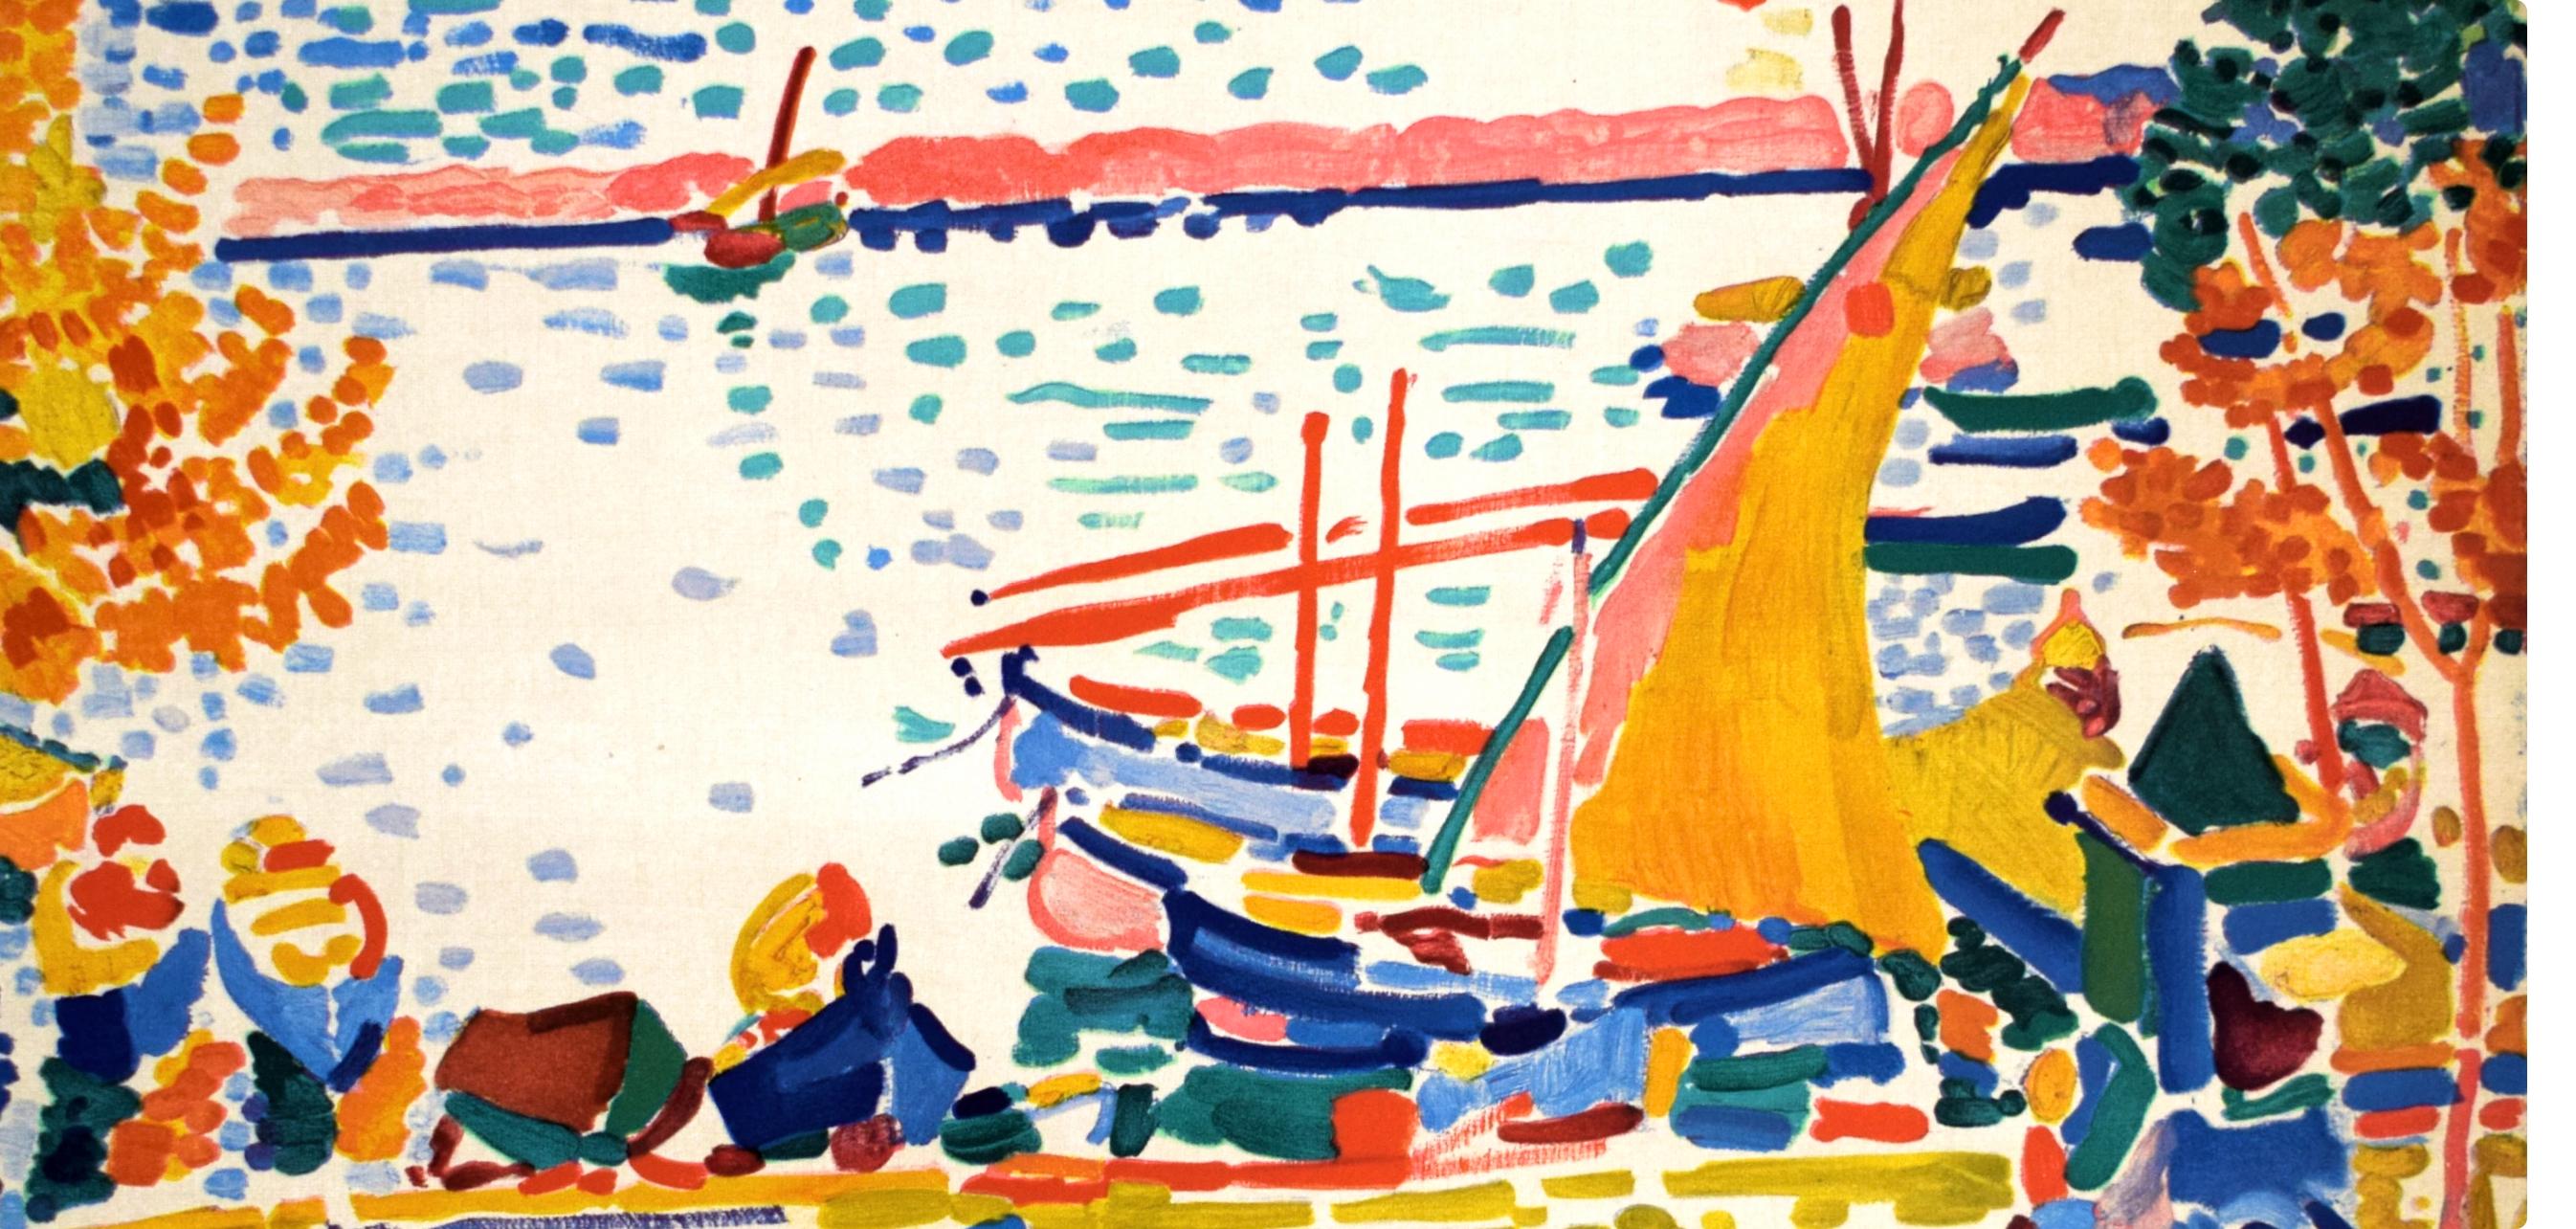 Derain, Port de Collioure, Fauves, Collection Pierre Lévy (after) - Modern Print by André Derain